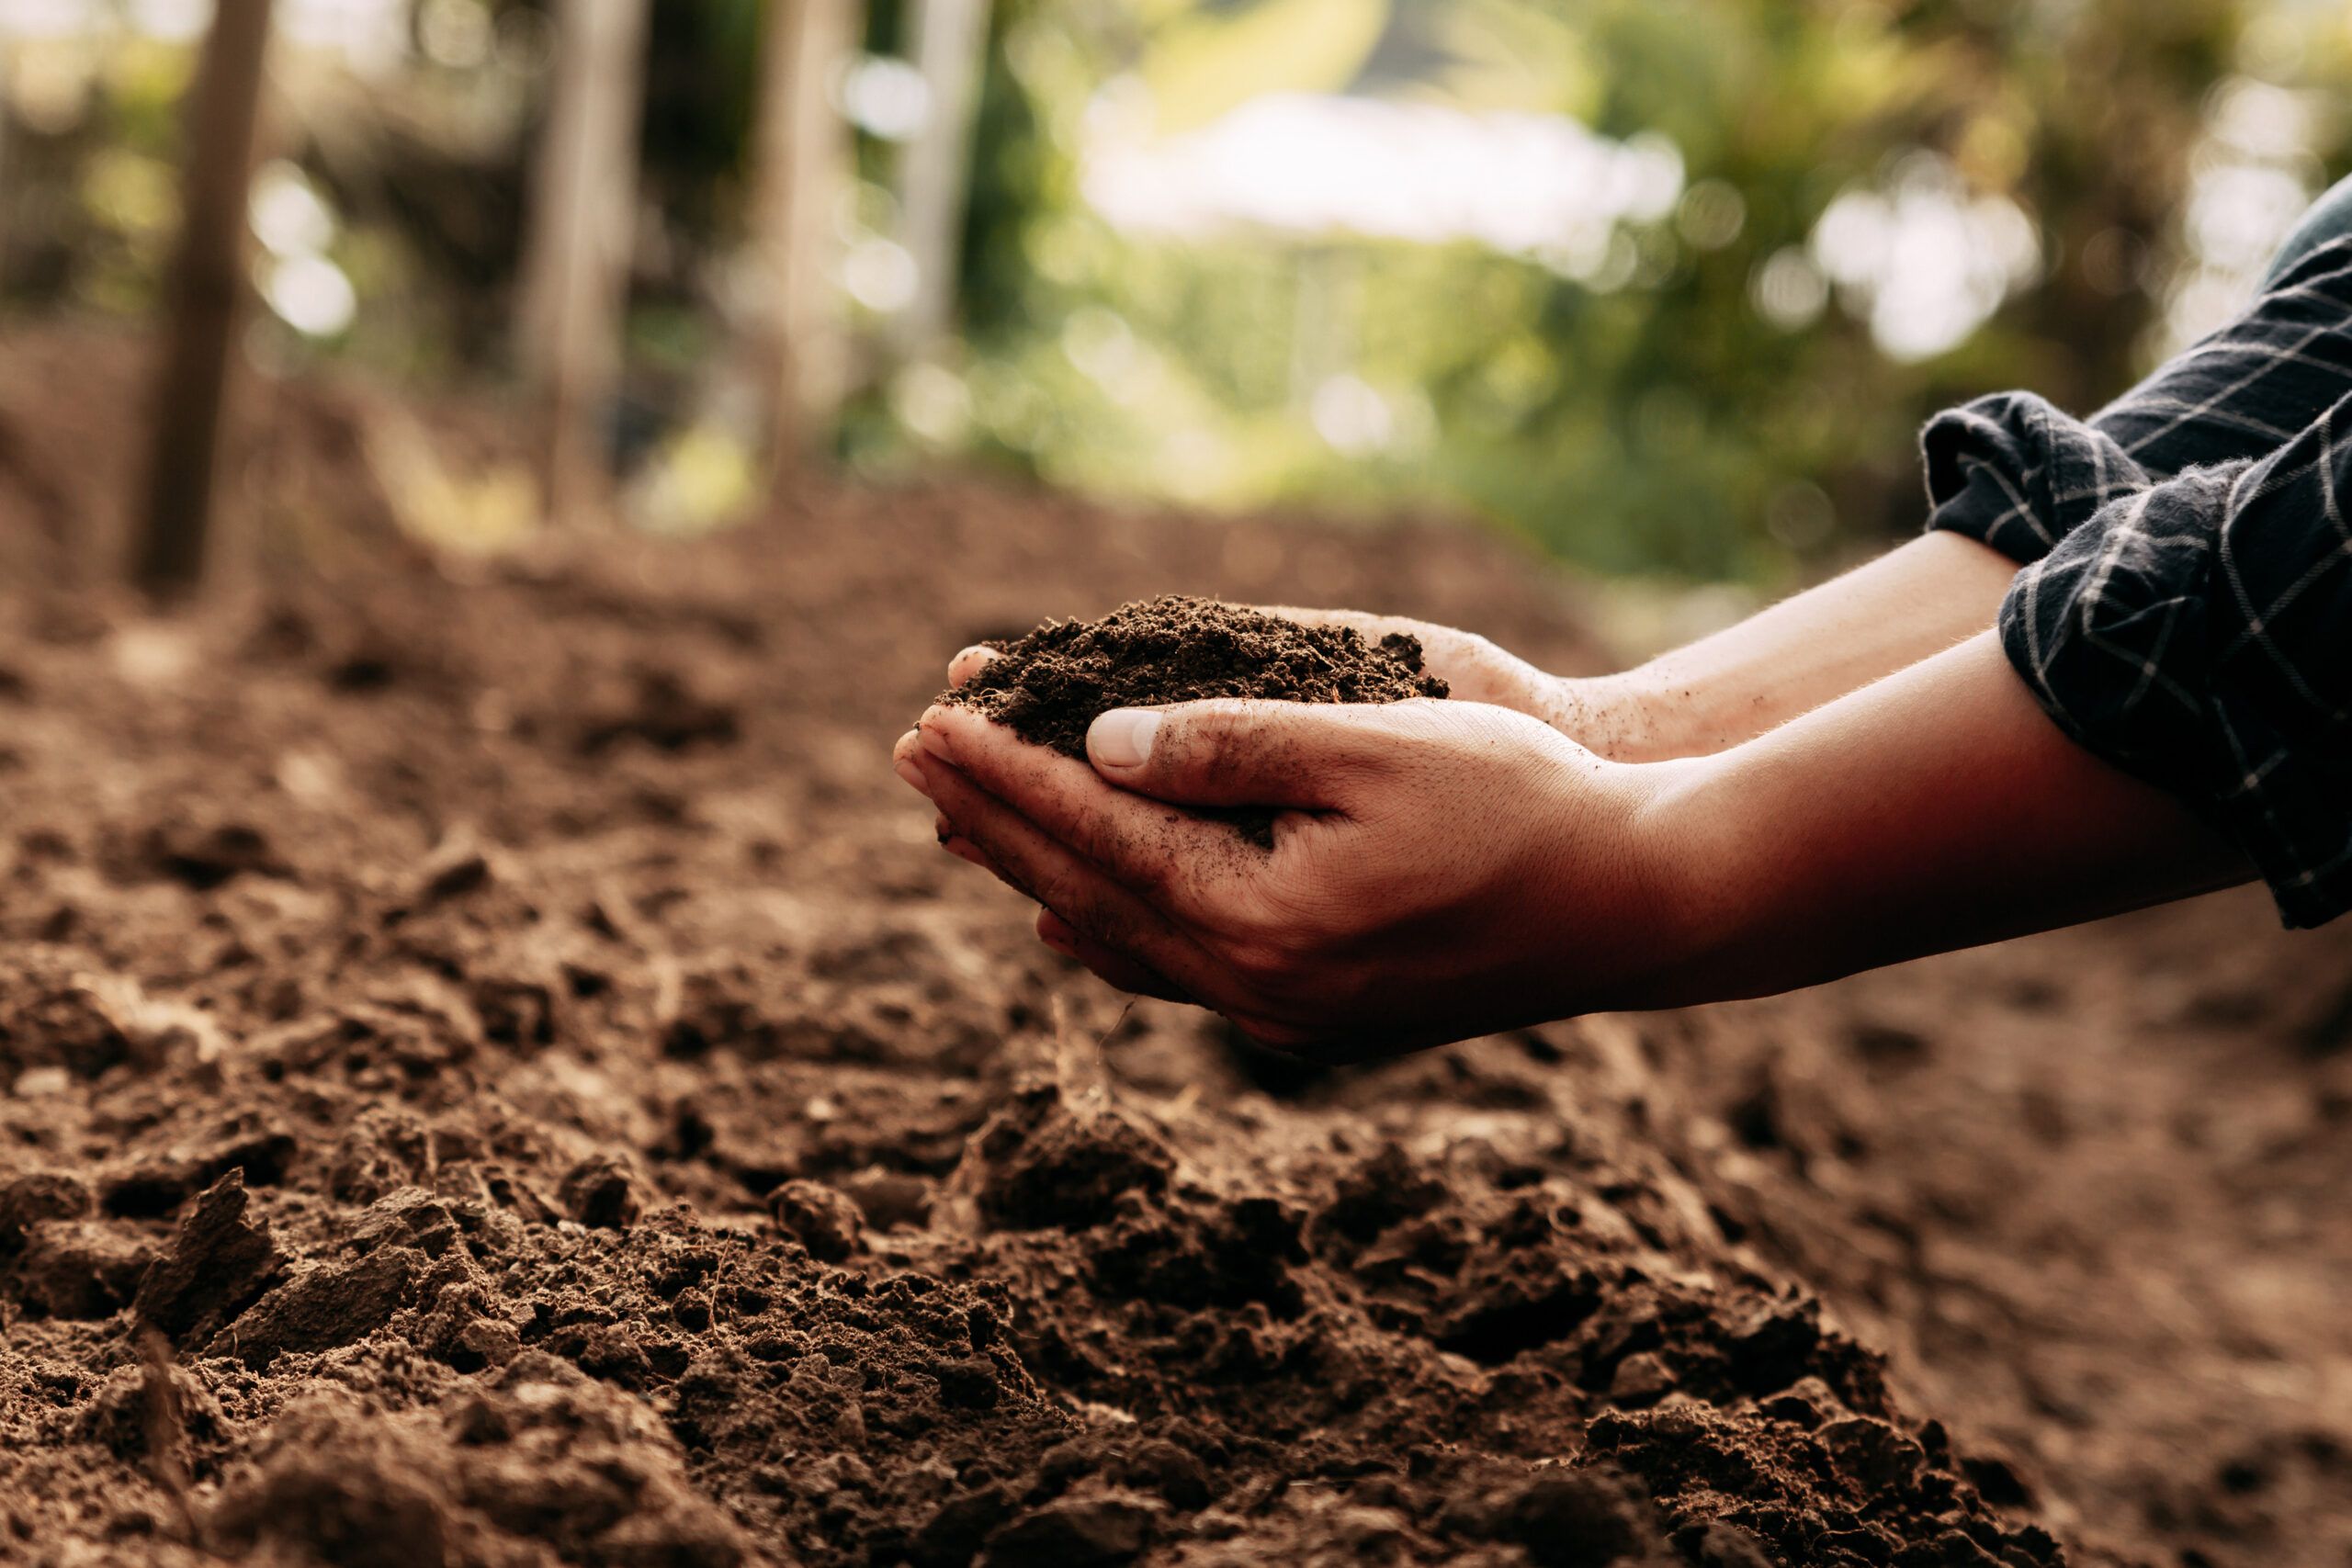 Hands in garden soil